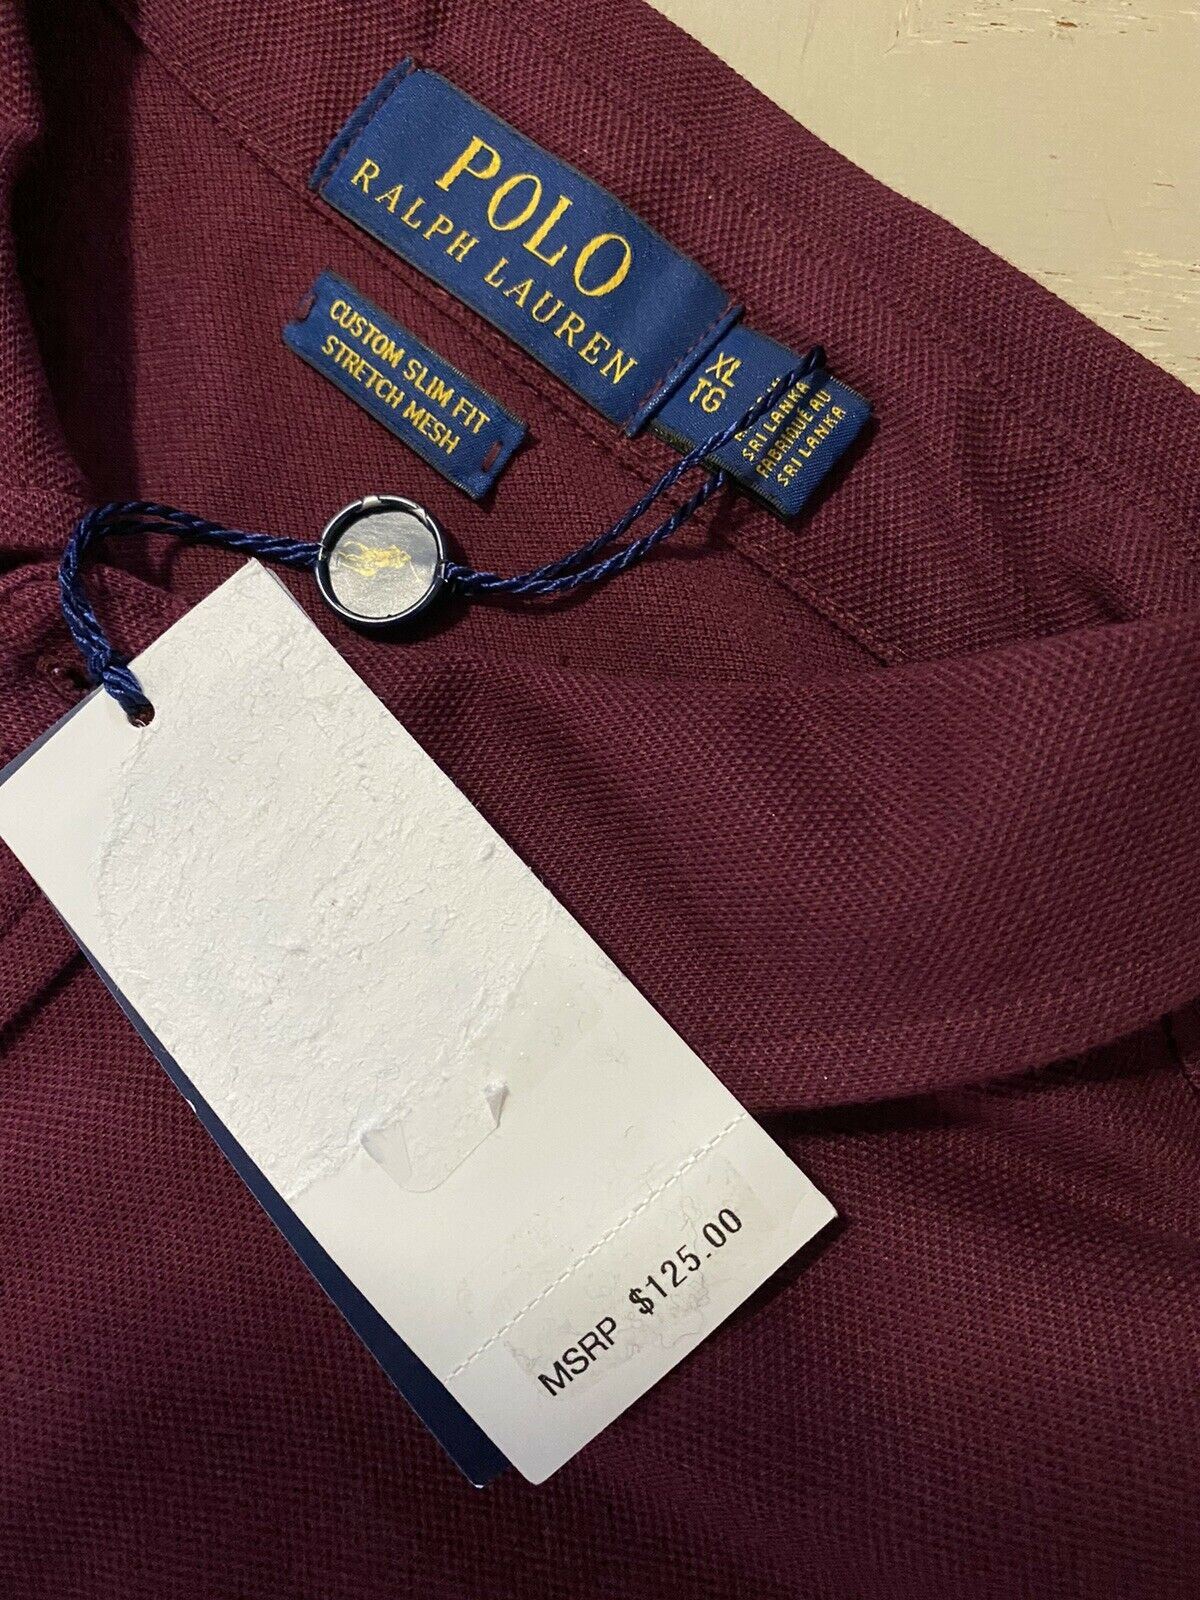 Мужская рубашка поло с длинным рукавом NWT Polo Ralph Lauren бордового размера XL